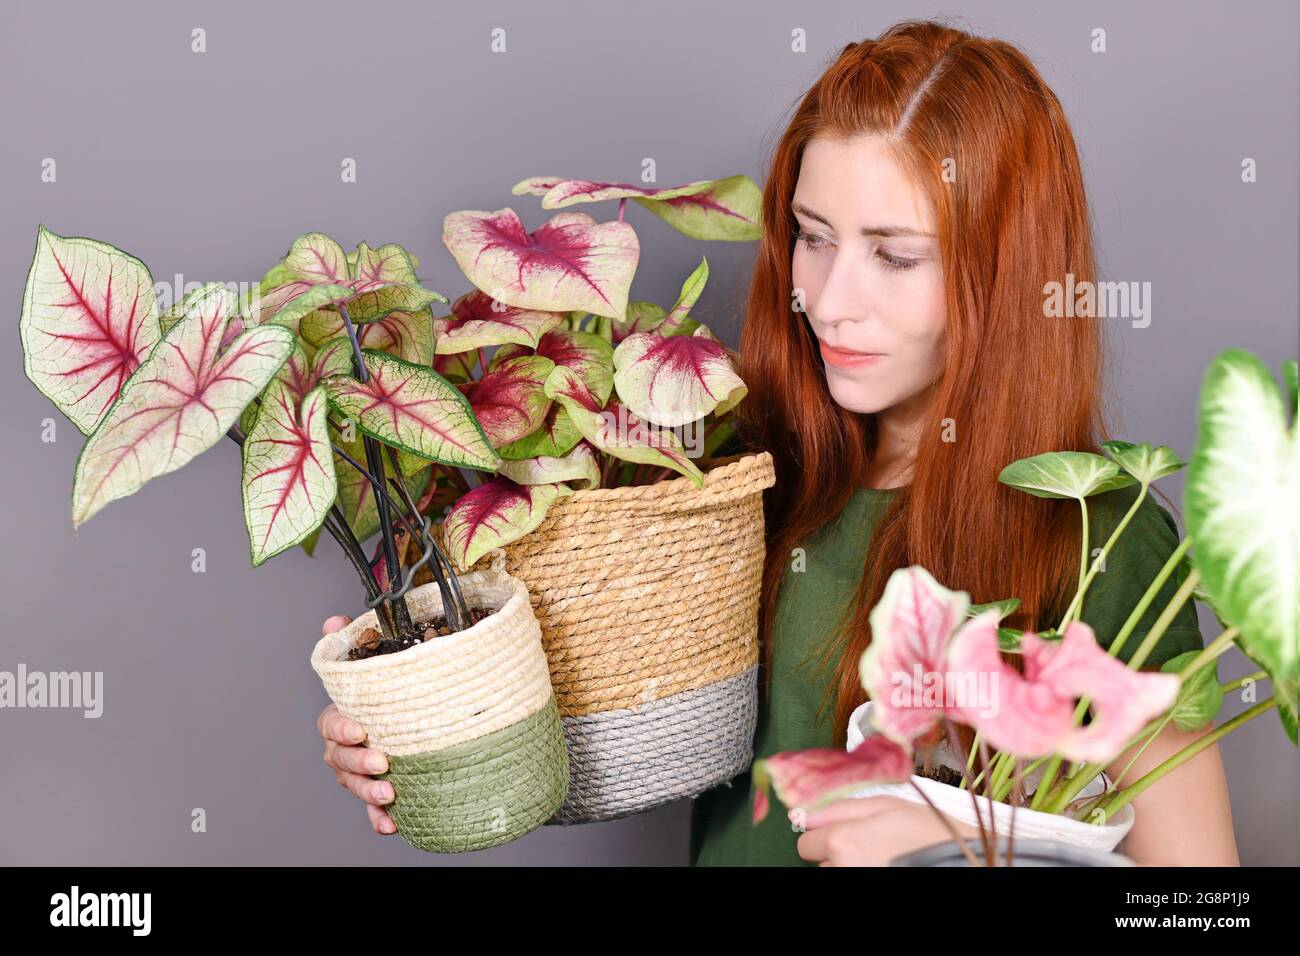 Femme aux cheveux rouges tenant beaucoup de plantes au foyer de Caladium tropicales dans des pots de fleurs Banque D'Images